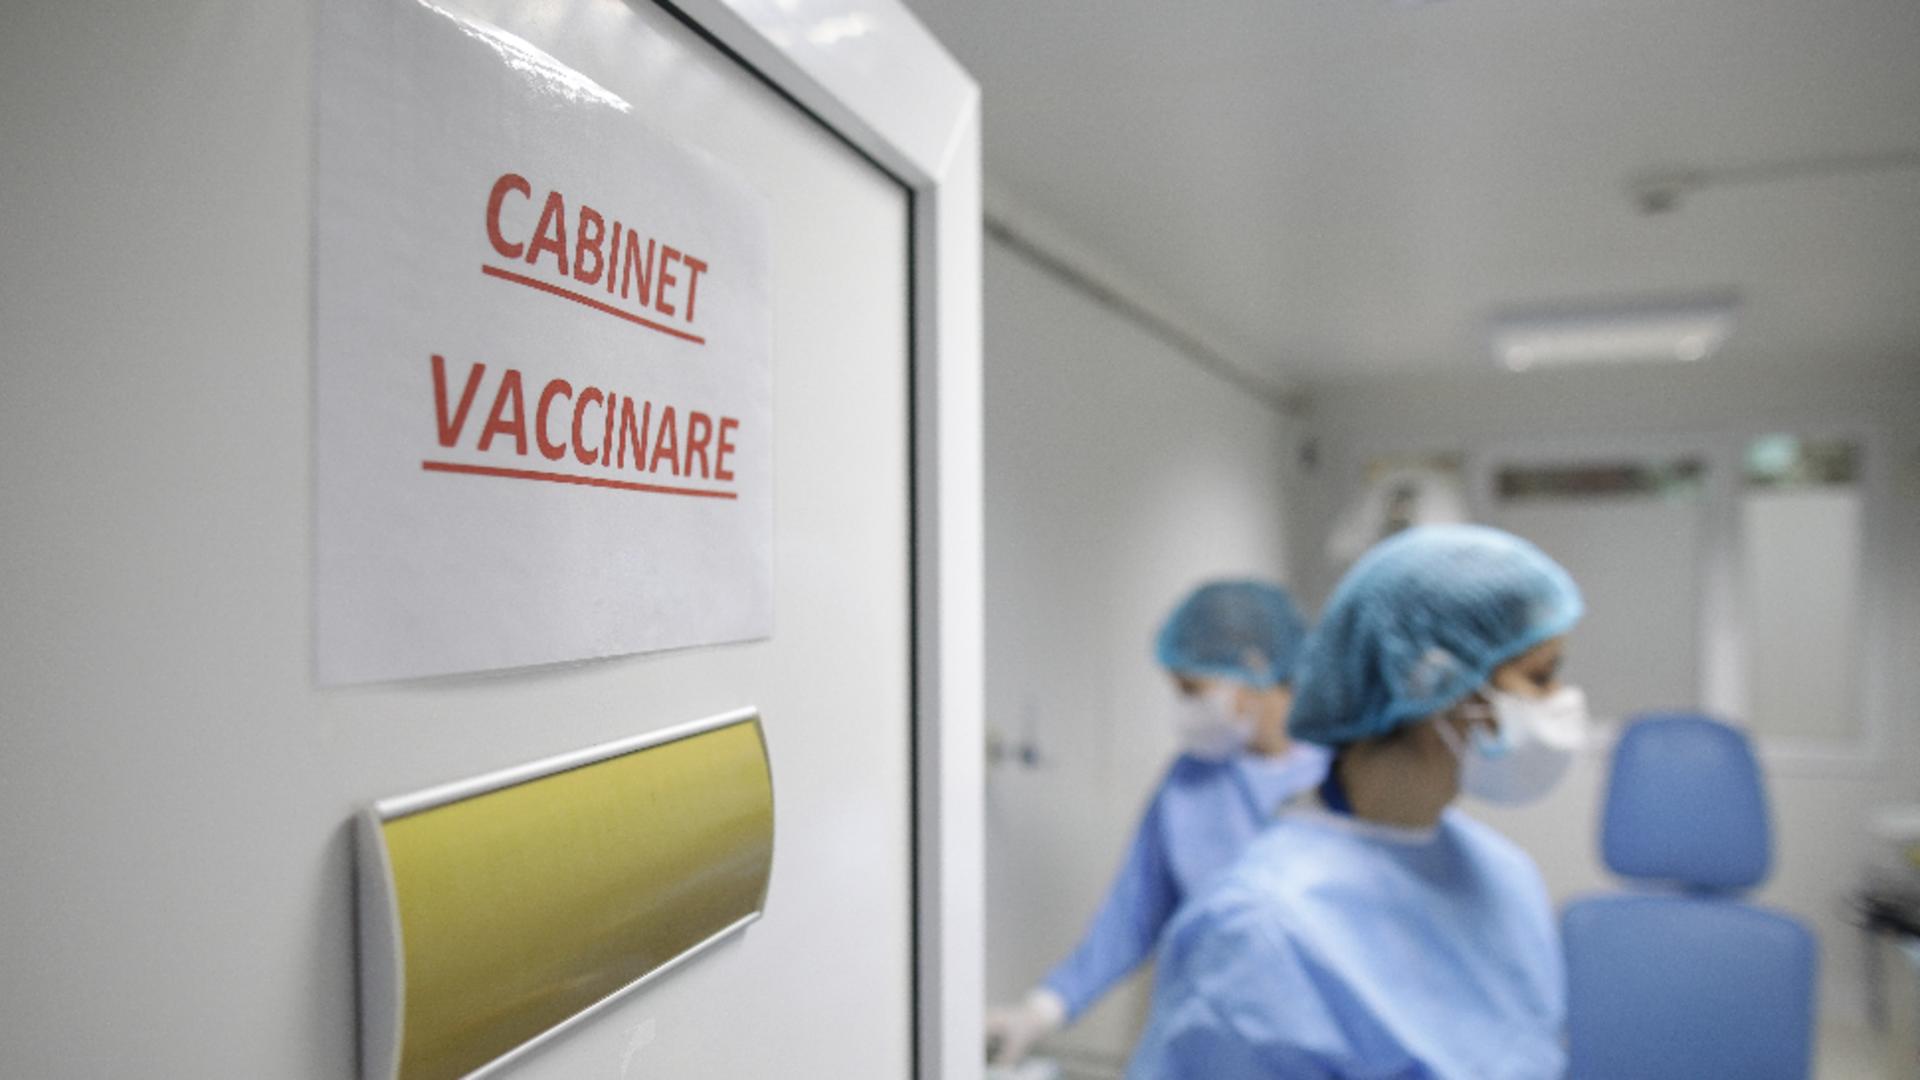 Cabinet de vaccinare (foto: arhivă)